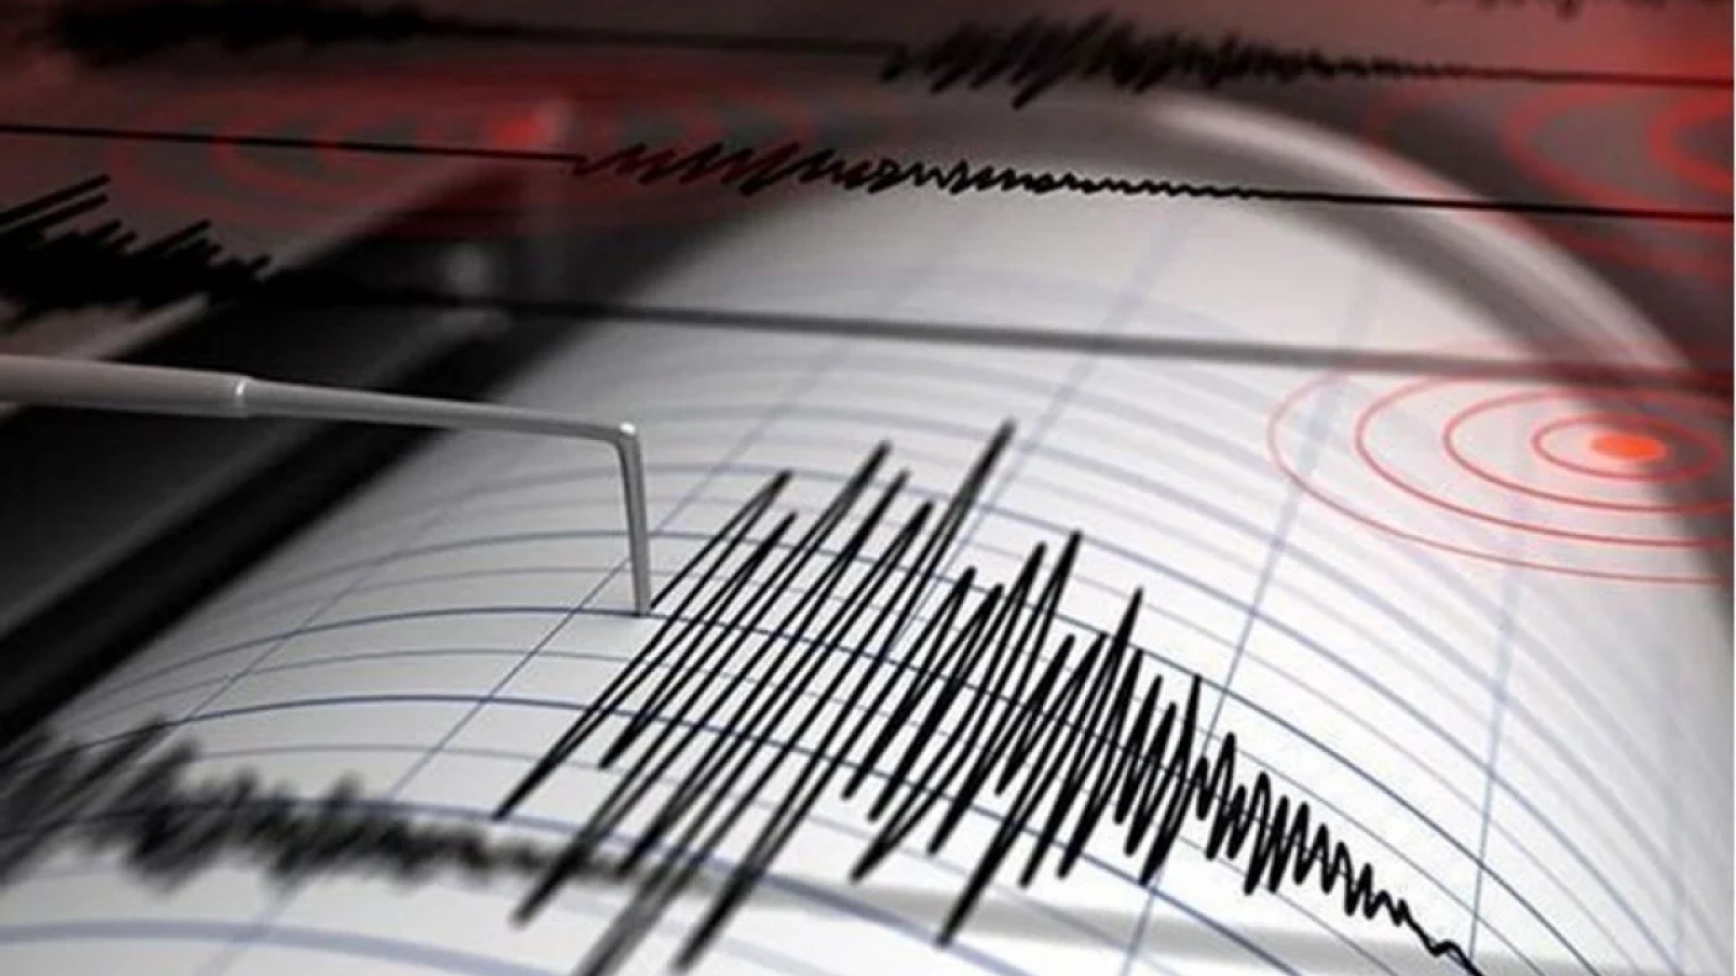 Malatya'da 4,3 büyüklüğünde deprem